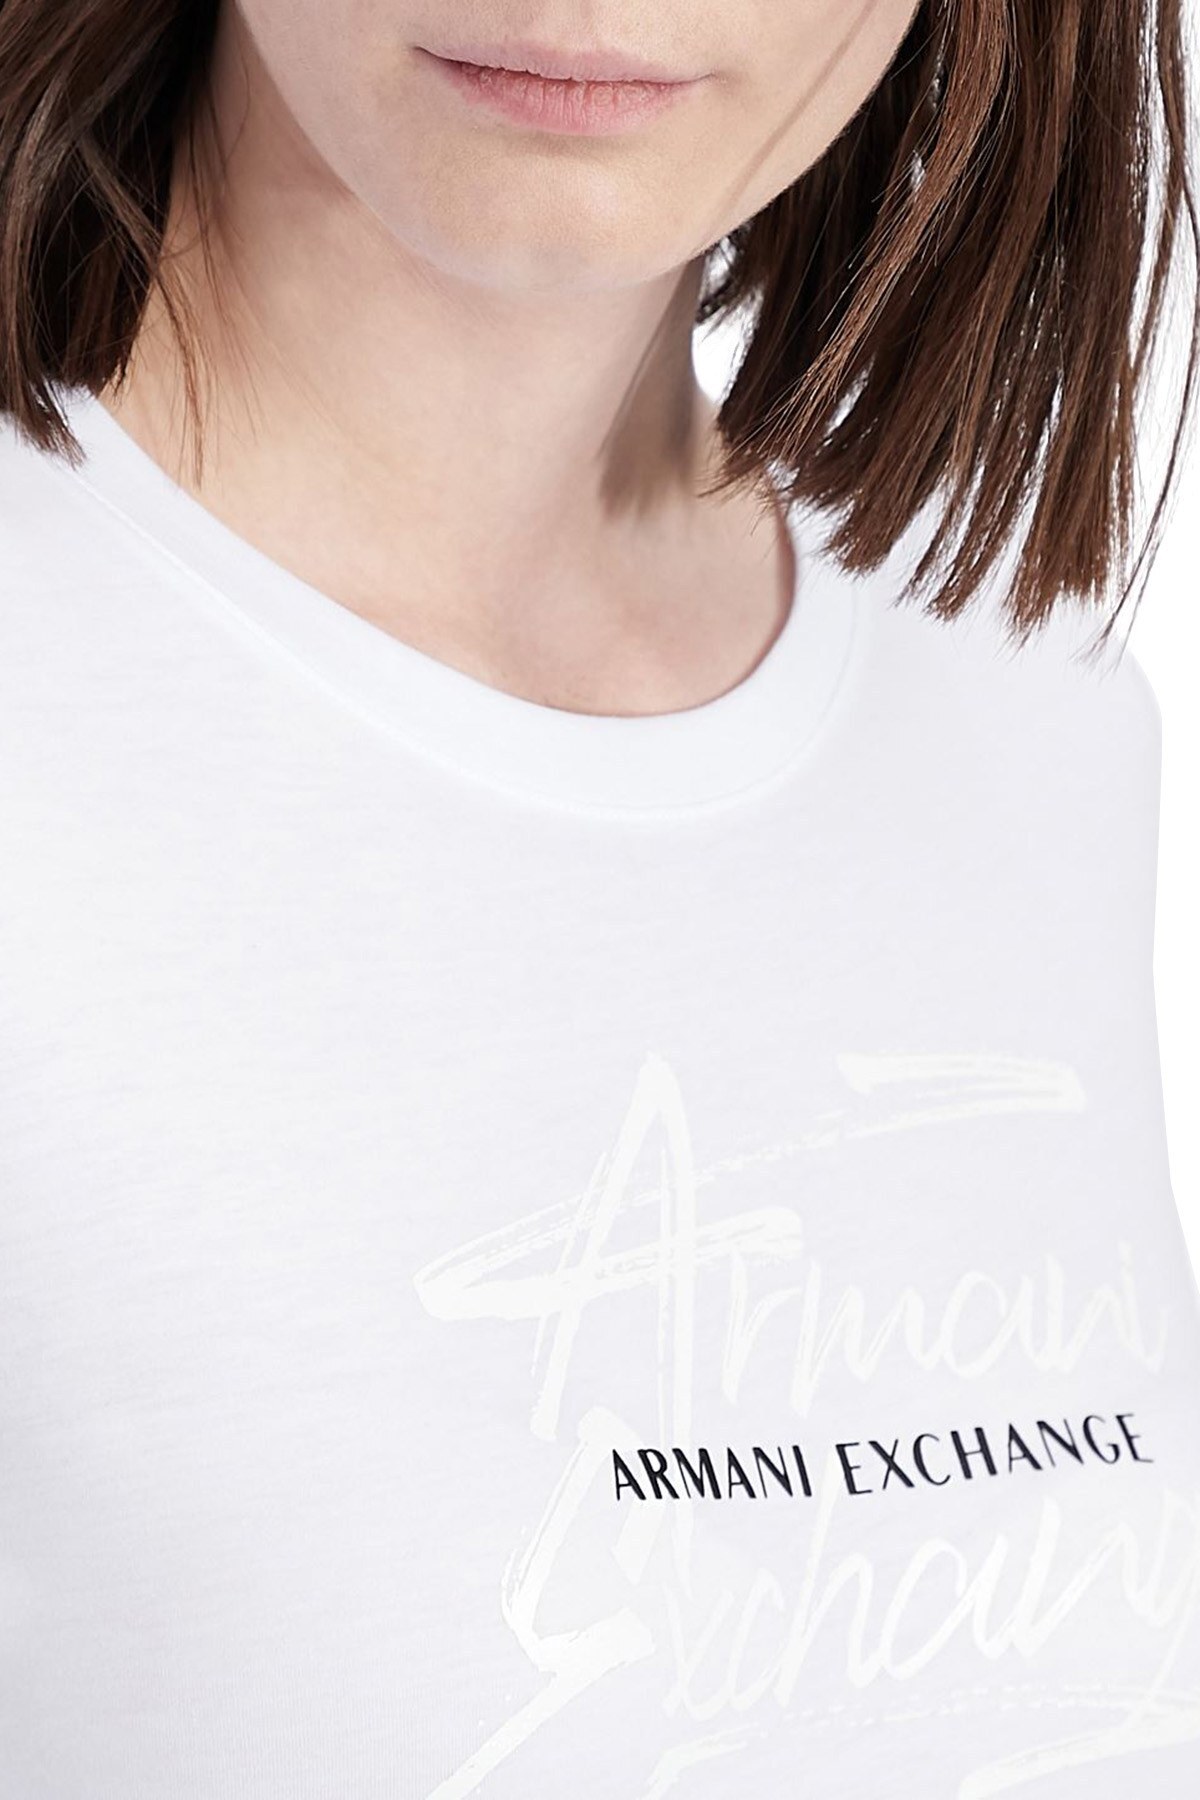 Armani Exchange % 100 Pamuk Bisiklet Yaka Slim Fit Bayan T Shirt 3KYTKR YJ16Z 1000 BEYAZ